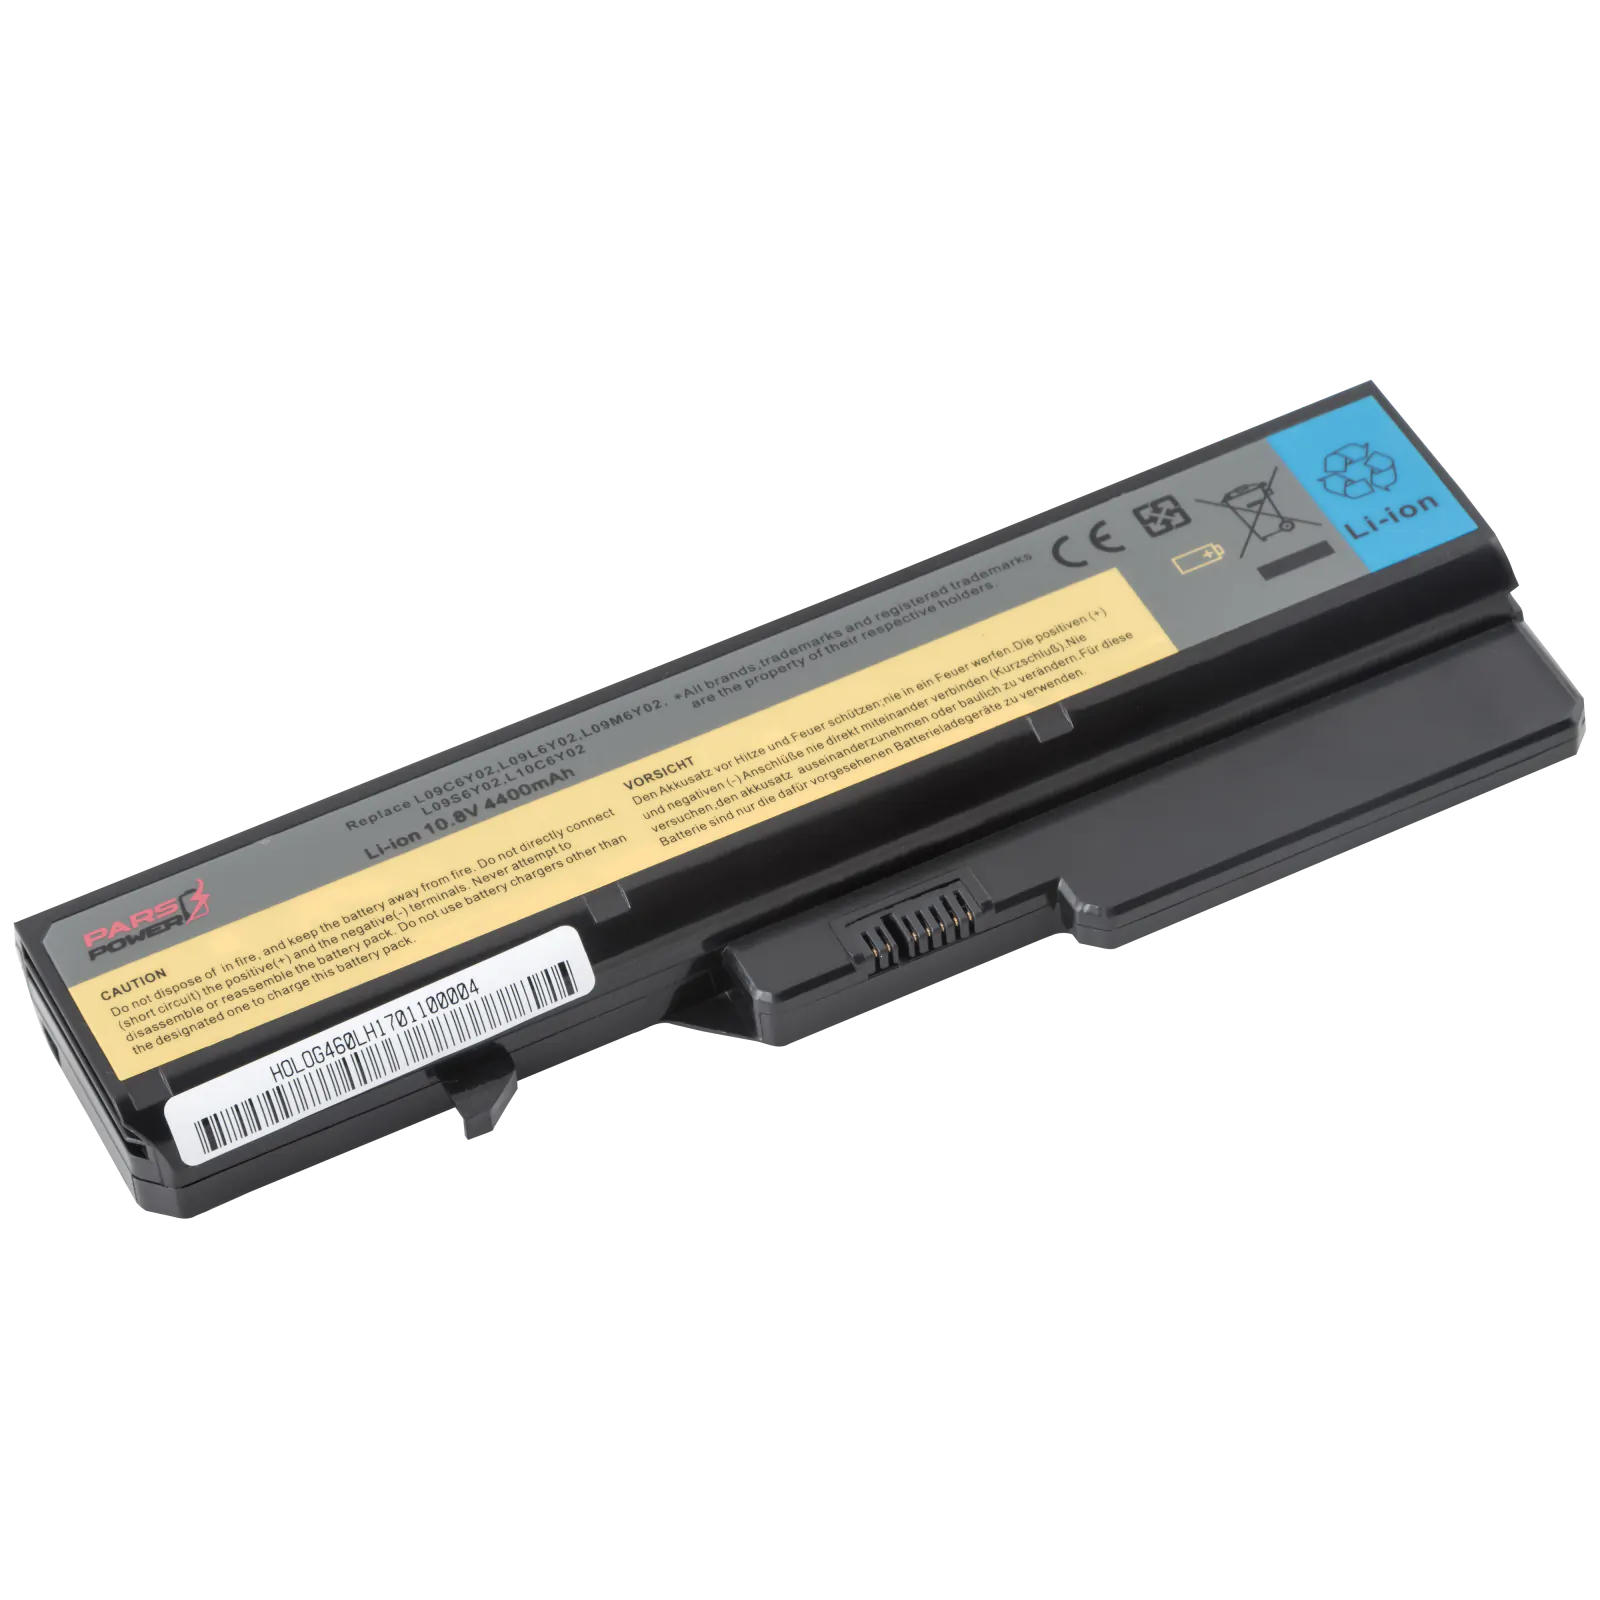 Lenovo ideaPad 121000935, 121000937 Notebook Batarya - Pil (Pars Power)